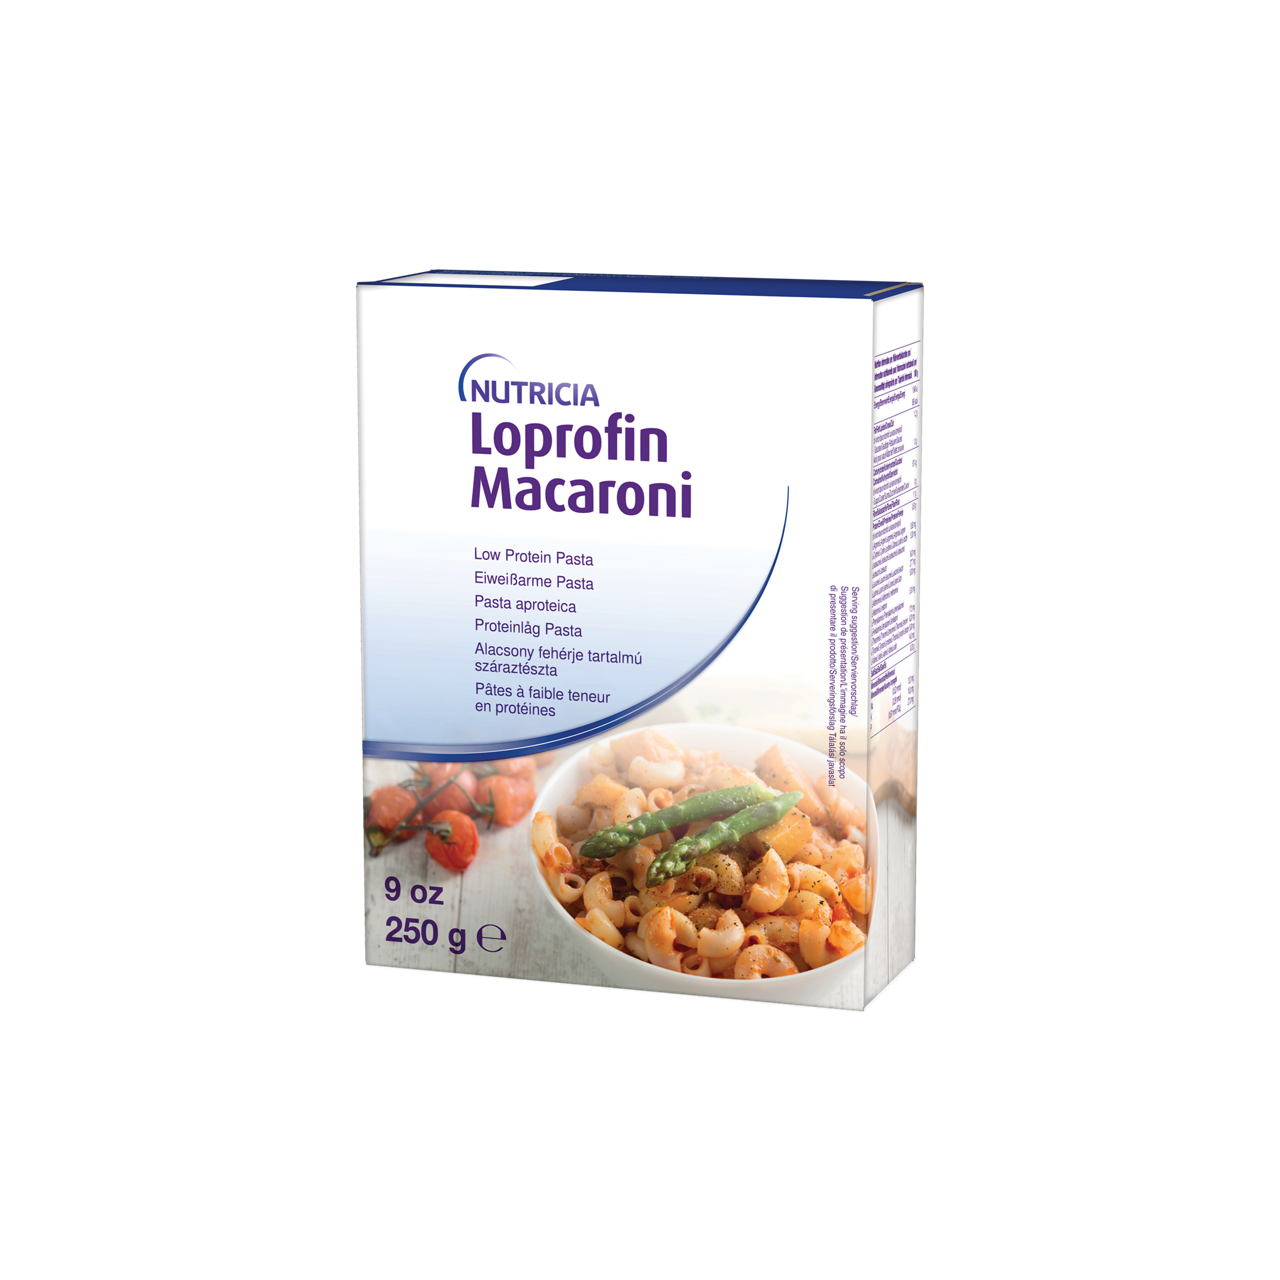 Loprofin Macaroni